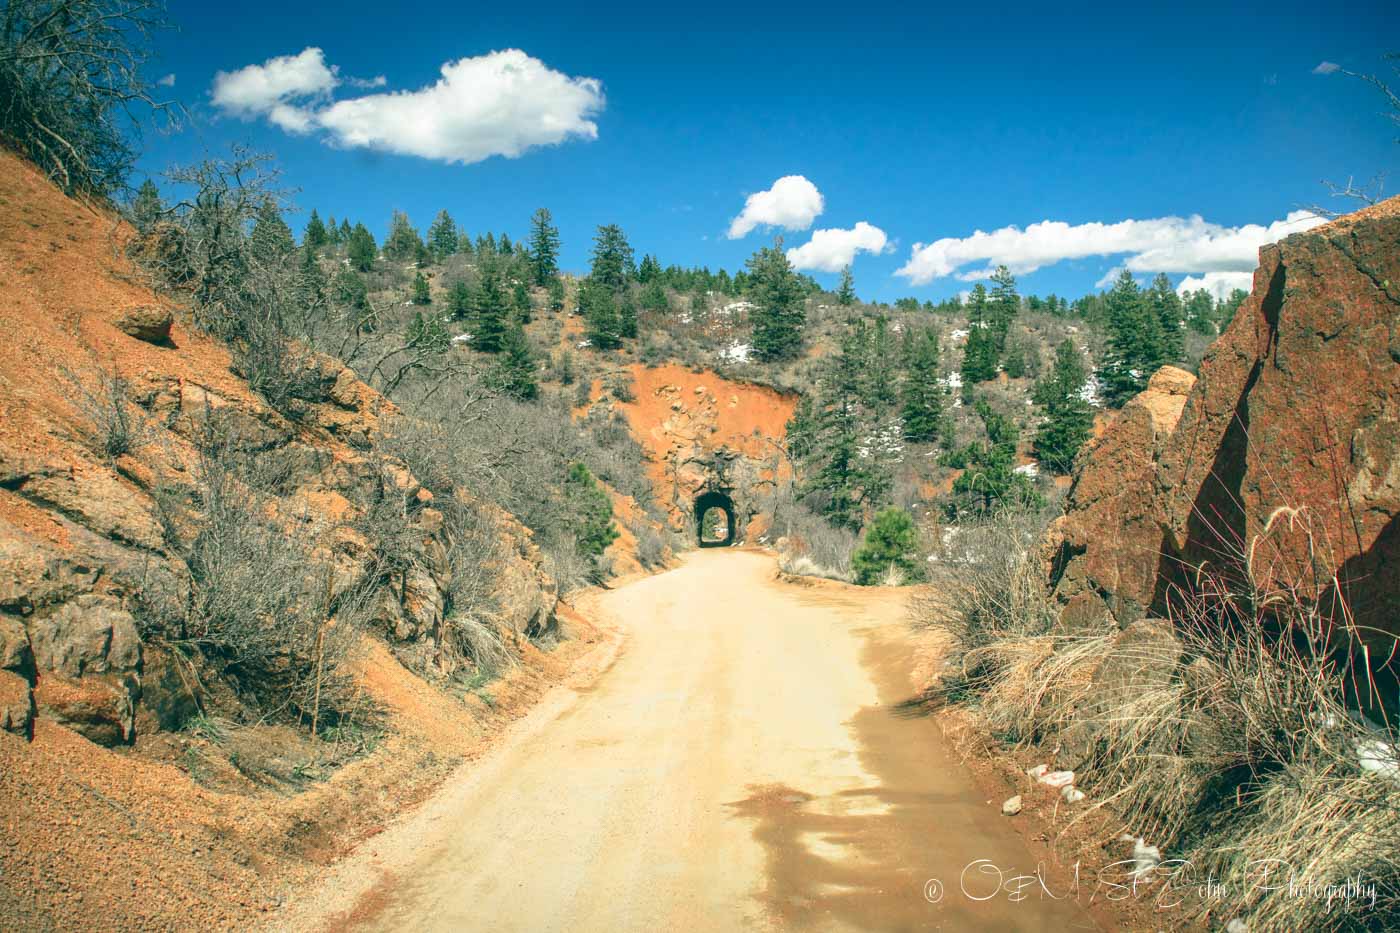 Road trip USA: A road in Colorado 